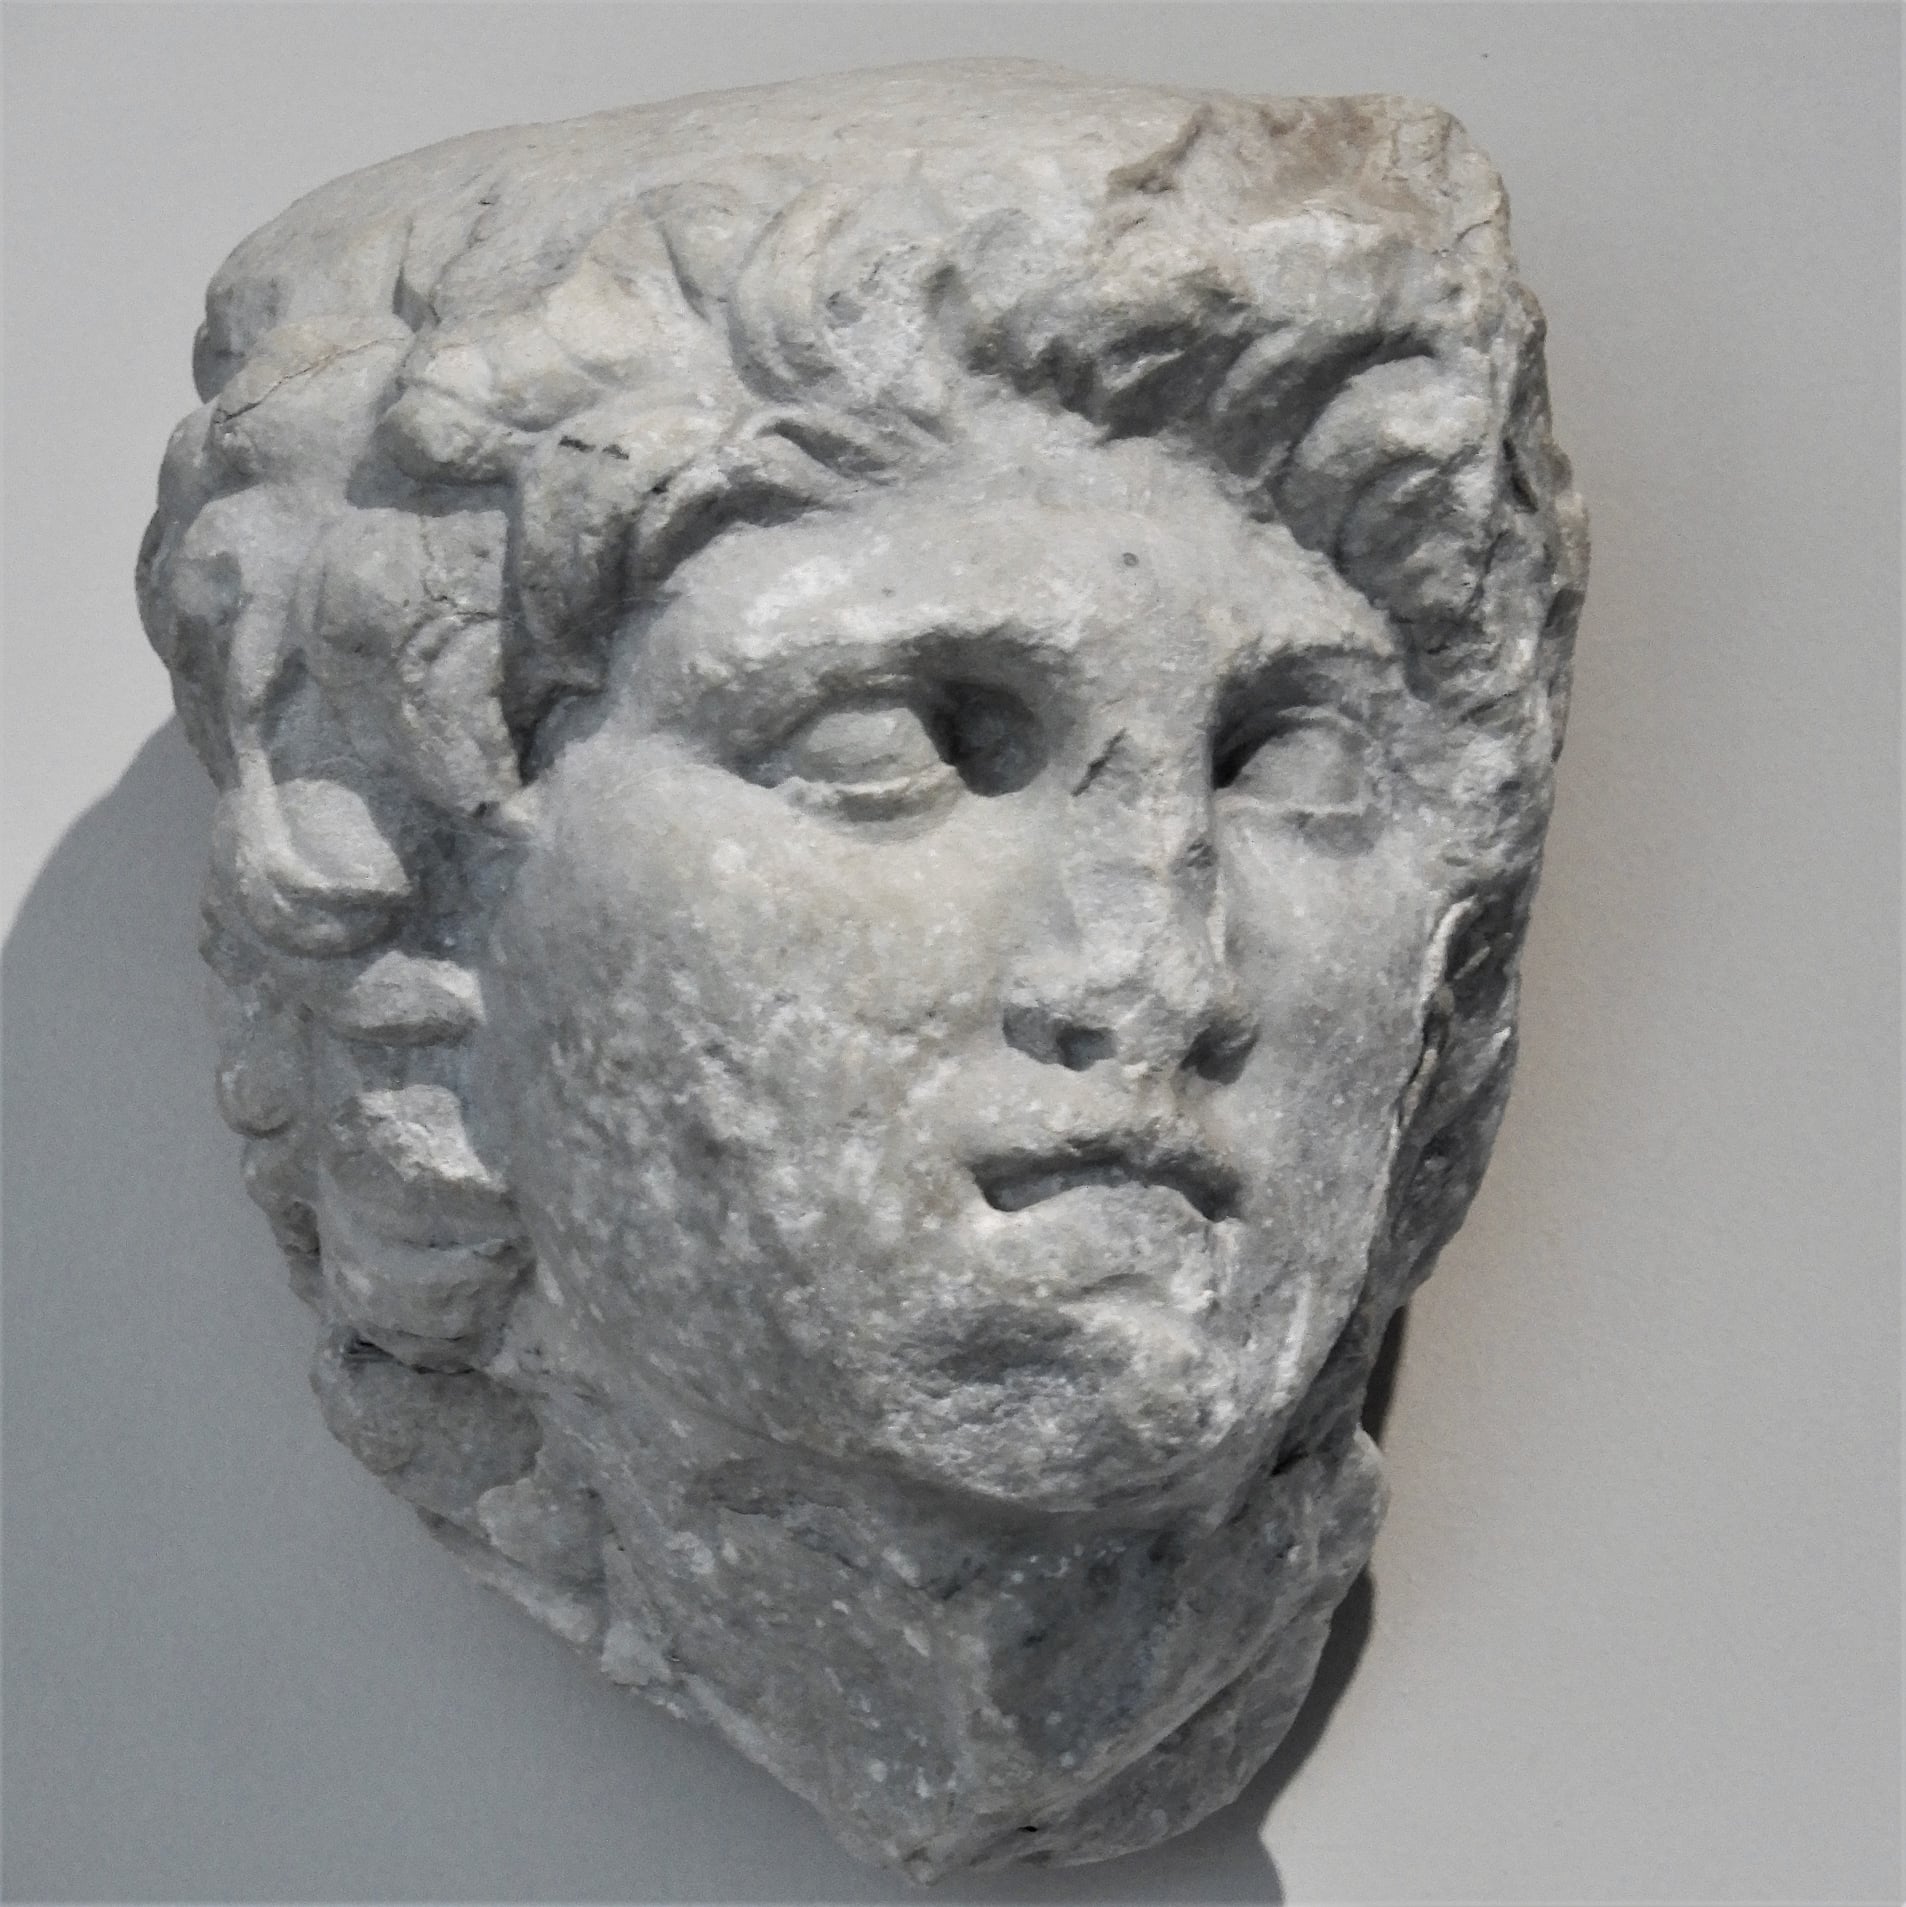 Κεφαλή του Μεγάλου Αλεξάνδρου που εκτίθεται στο Πολυκεντρικό Μουσείο Αιγών